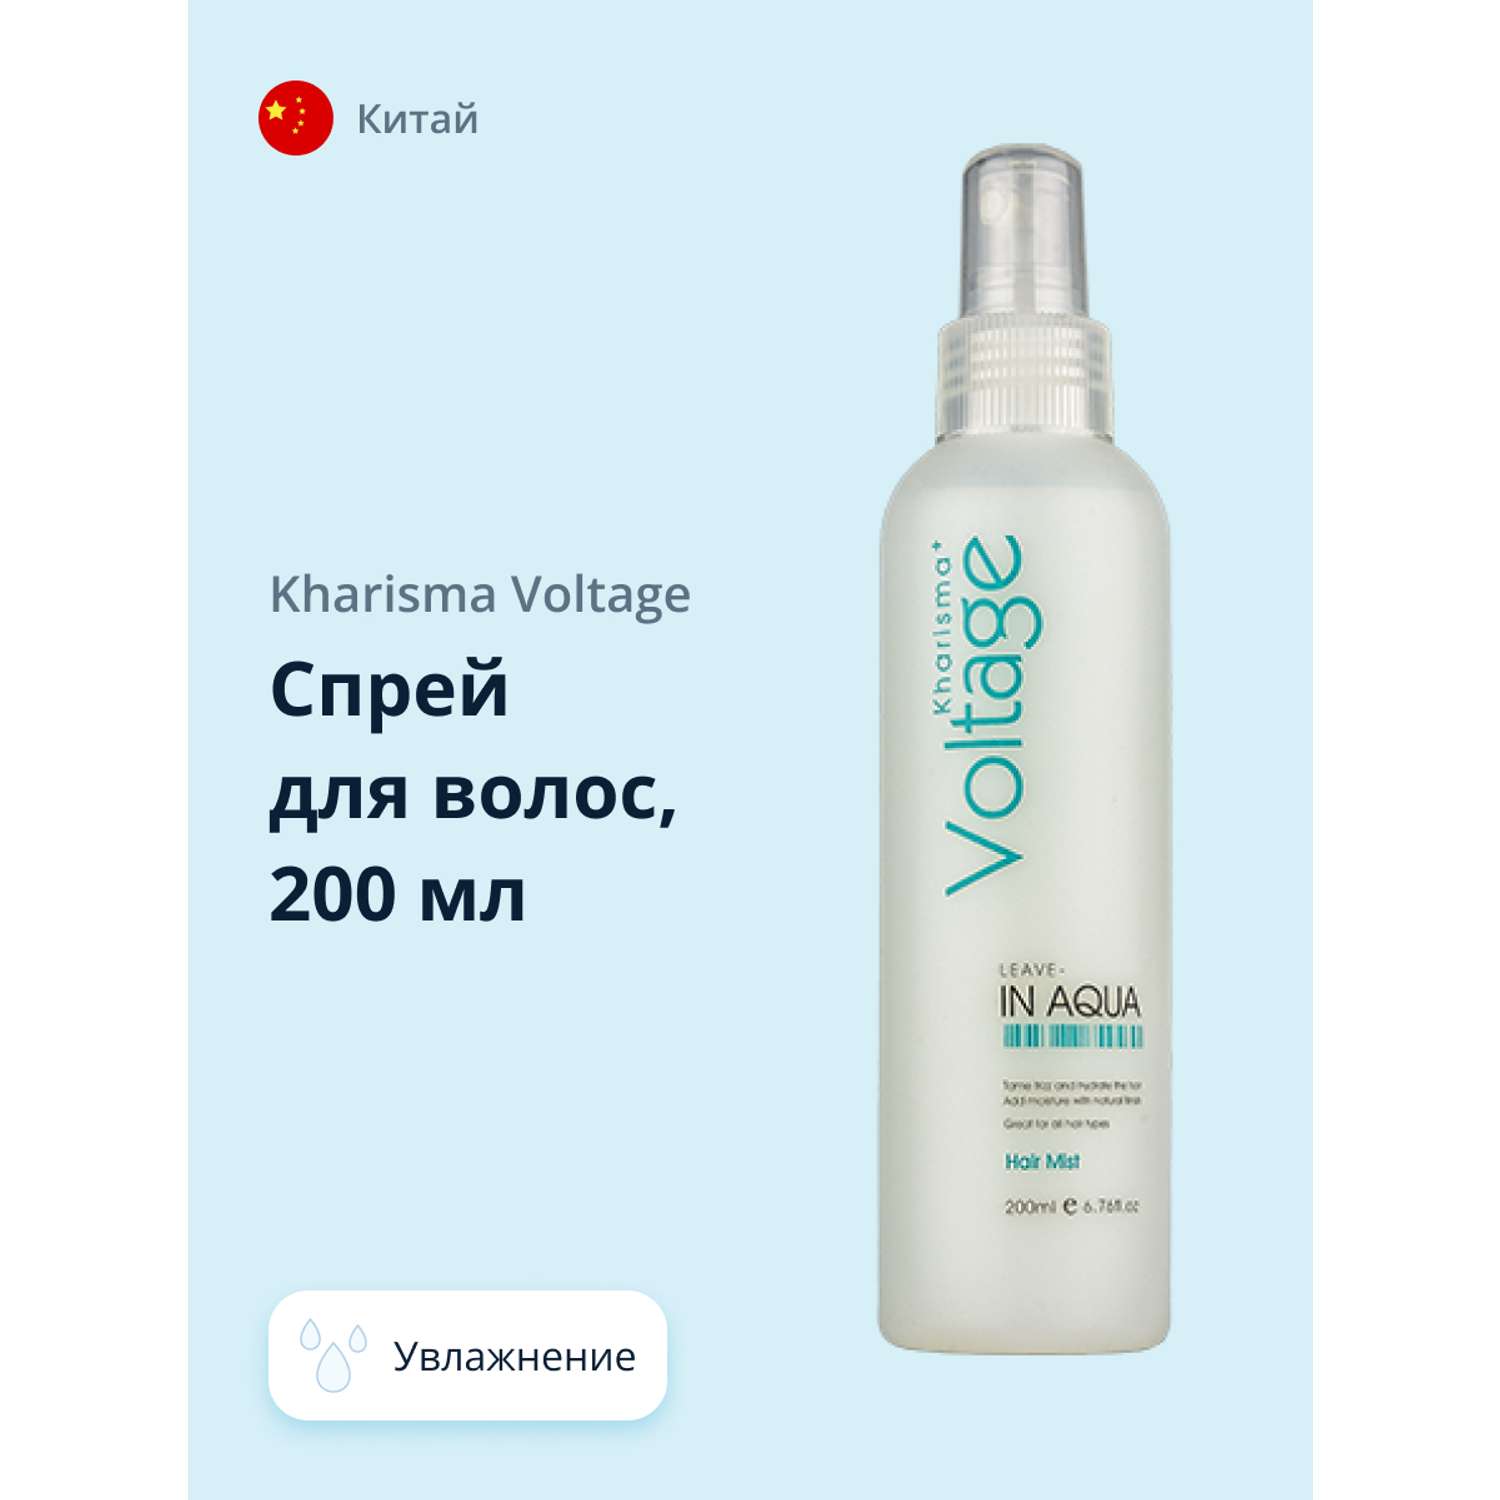 Спрей для волос Kharisma Voltage увлажняющий 200 мл - фото 1